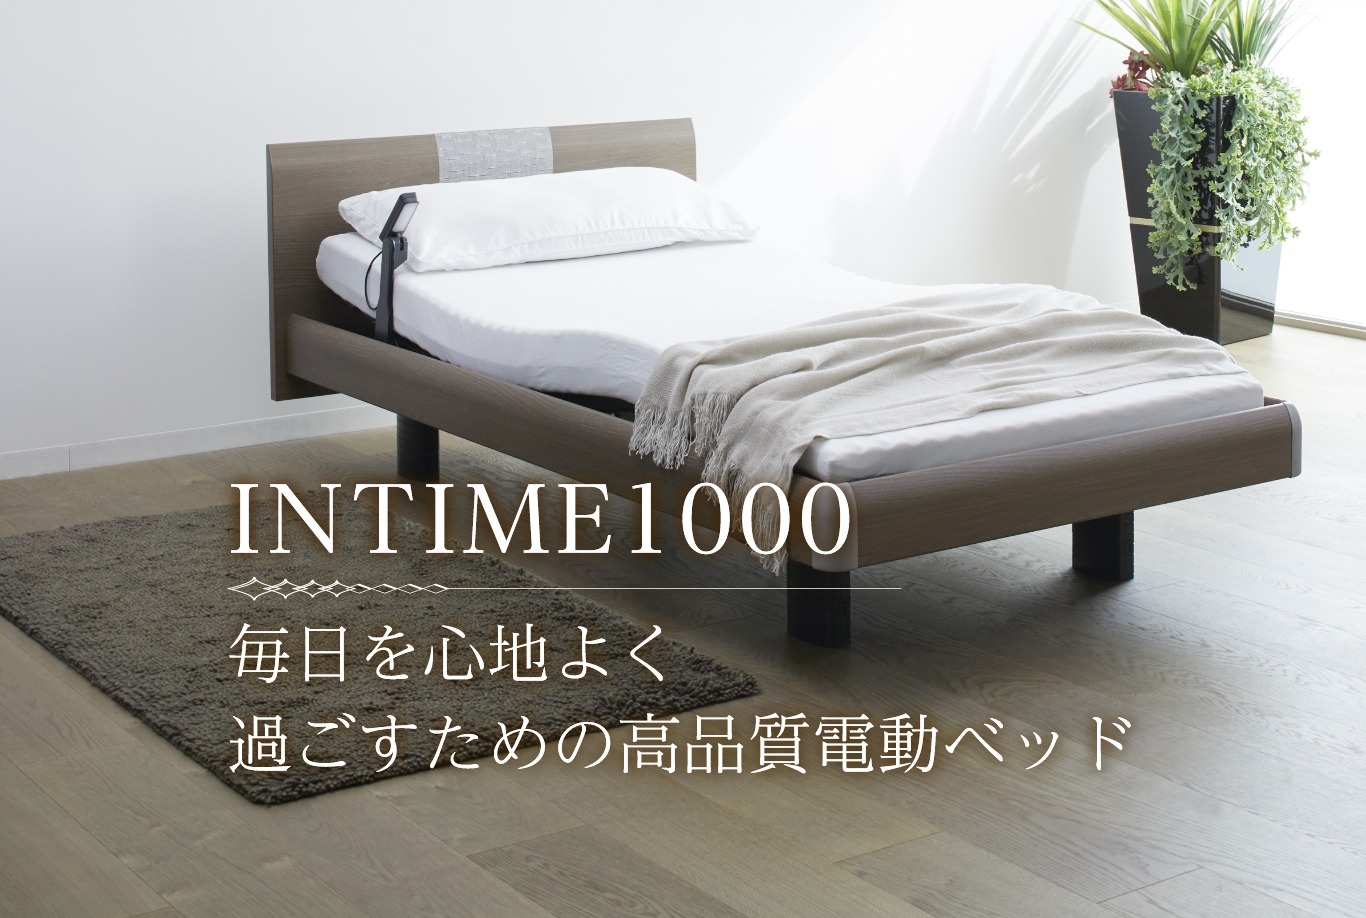 毎日を心地よく 過ごすための 高品質な電動ベッド INTIME1000